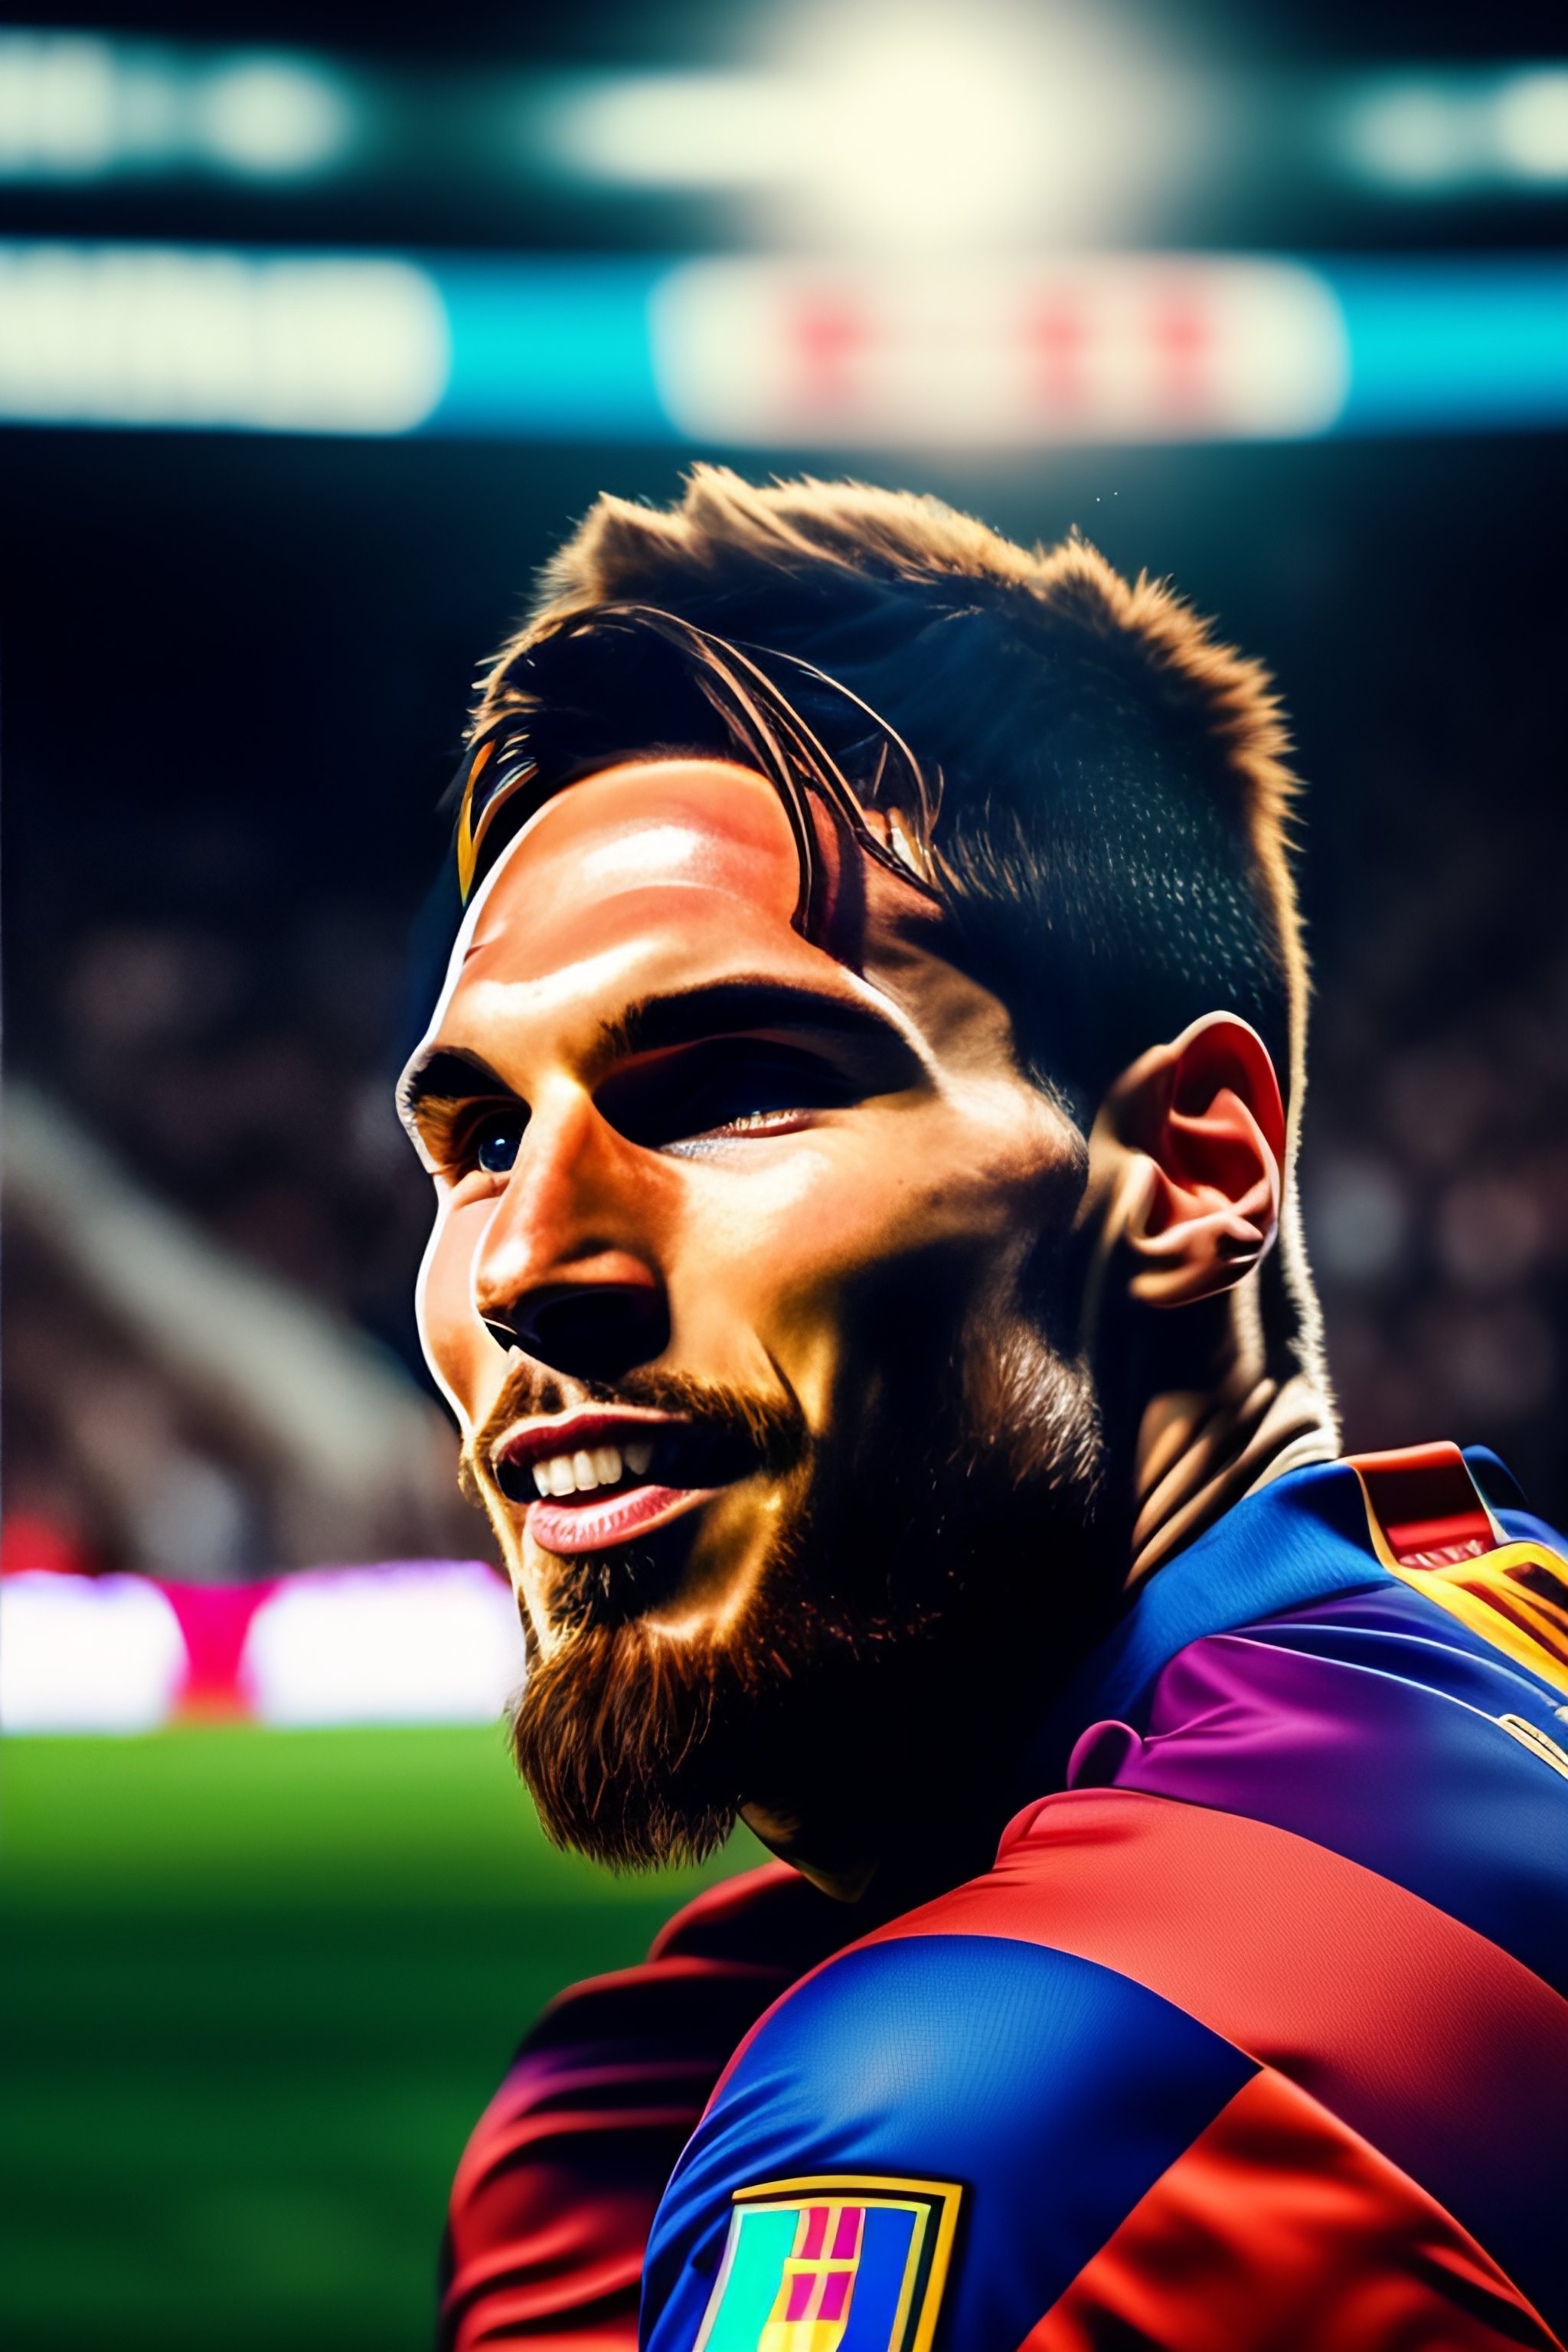 Nếu bạn là fan của bóng đá, hãy thưởng thức hình ảnh của Messi – một trong những cầu thủ vĩ đại nhất từ trước đến nay. Xem anh ta biểu diễn kỹ thuật và ghi bàn dễ dàng, chắc chắn sẽ khiến bạn thán phục!